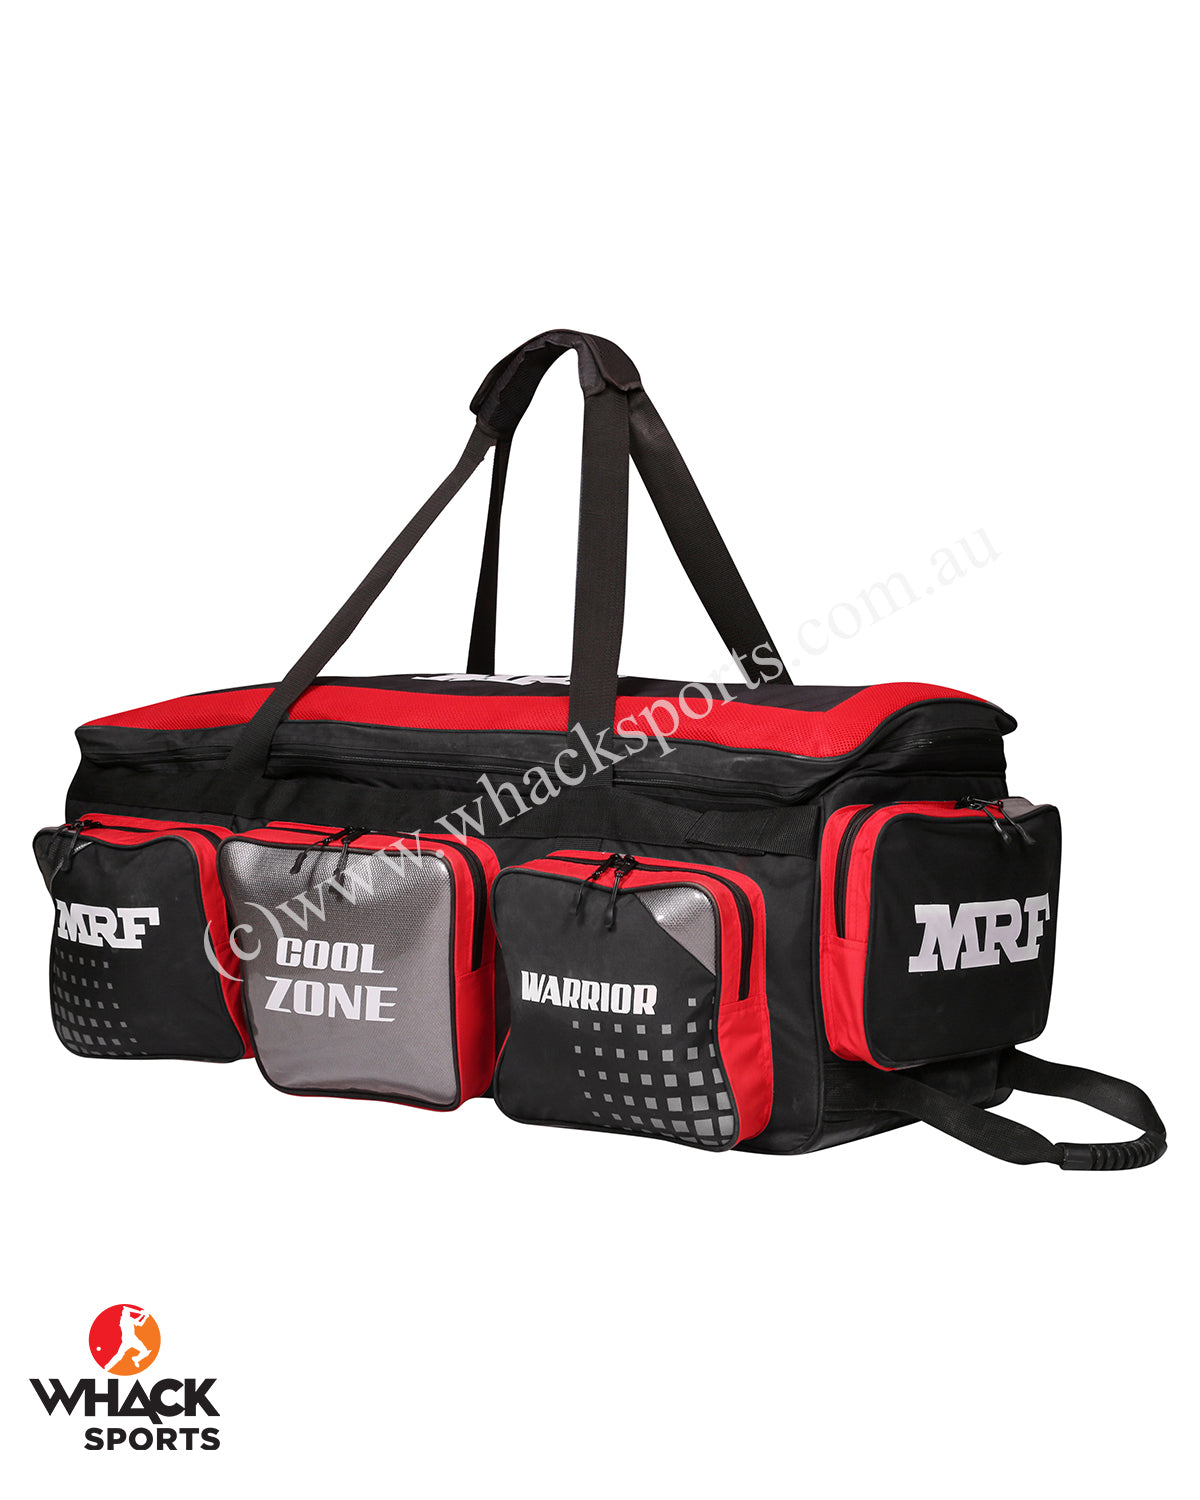 Cricket Kit Bag Png Image Background - Mrf Cricket Kit Bag, Transparent Png  , Transparent Png Image - PNGitem